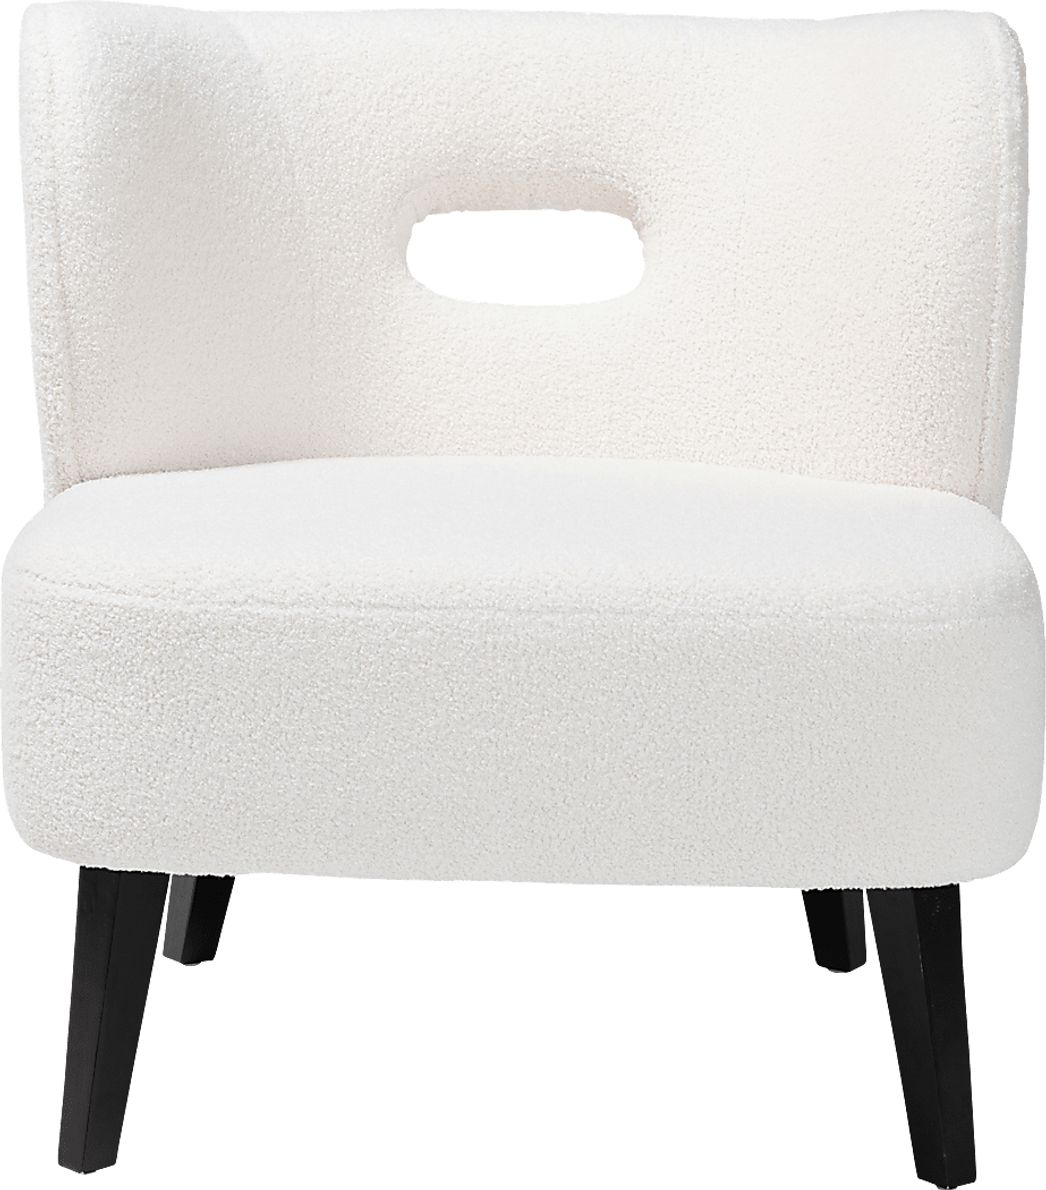 Barrataria Accent Chair